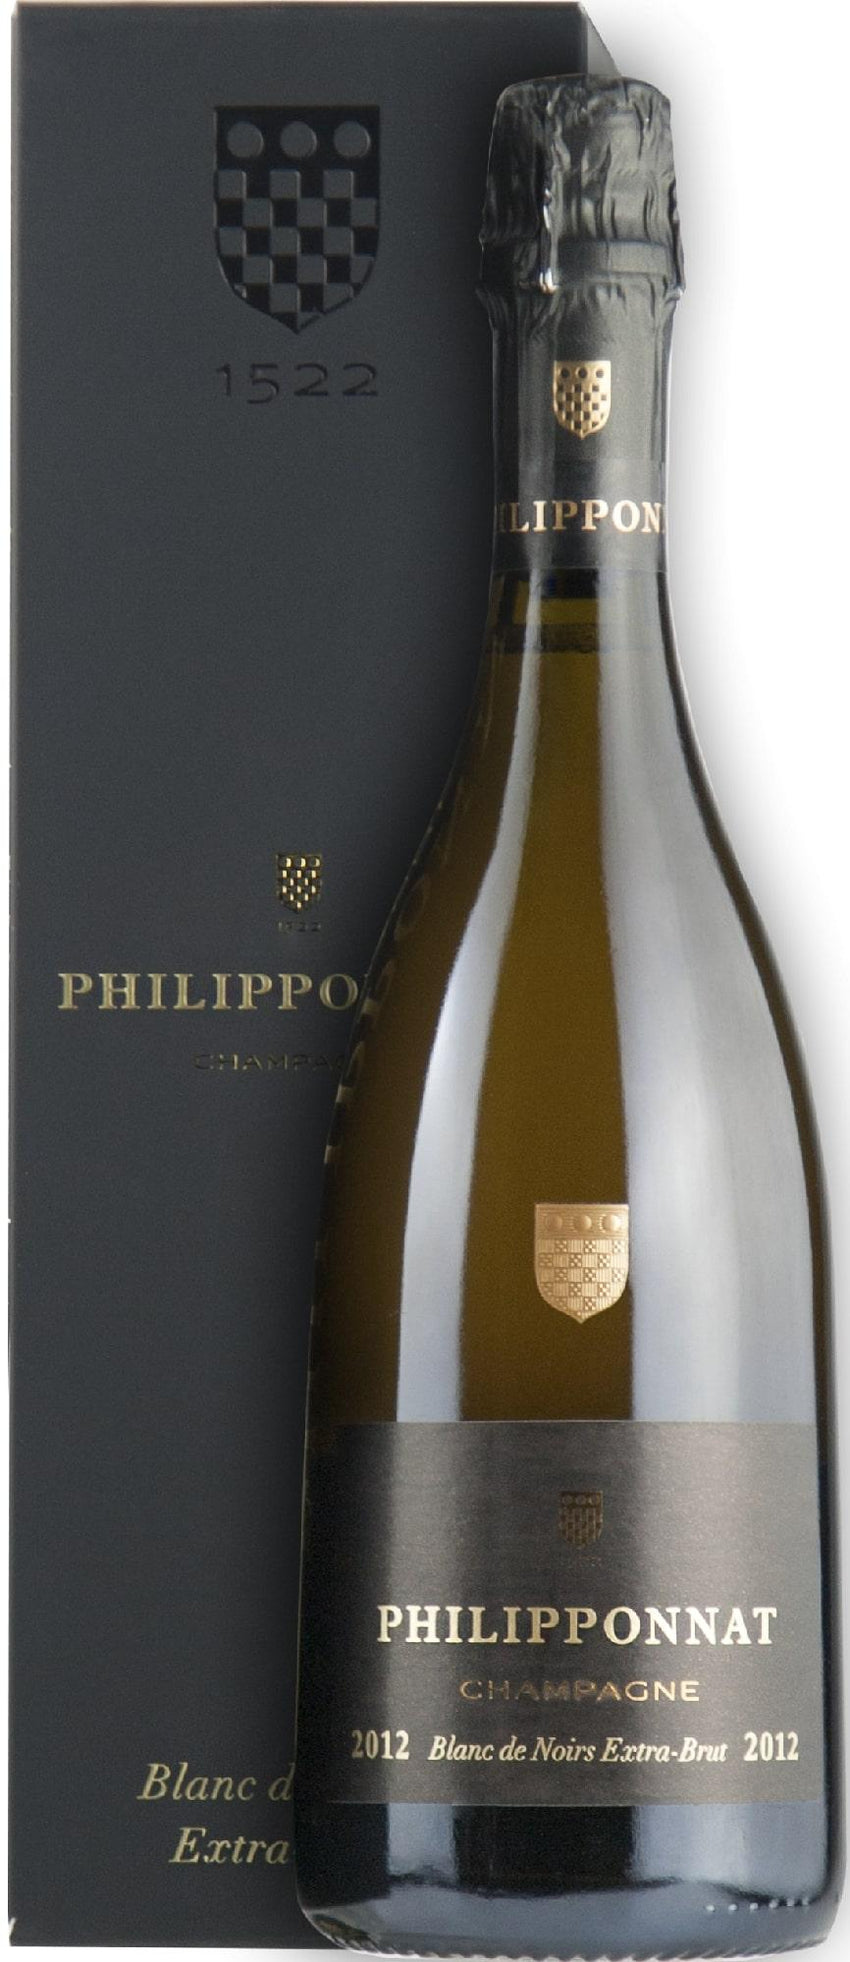 Champagne "Blanc de Noirs Extra Brut" 2014 Philipponat